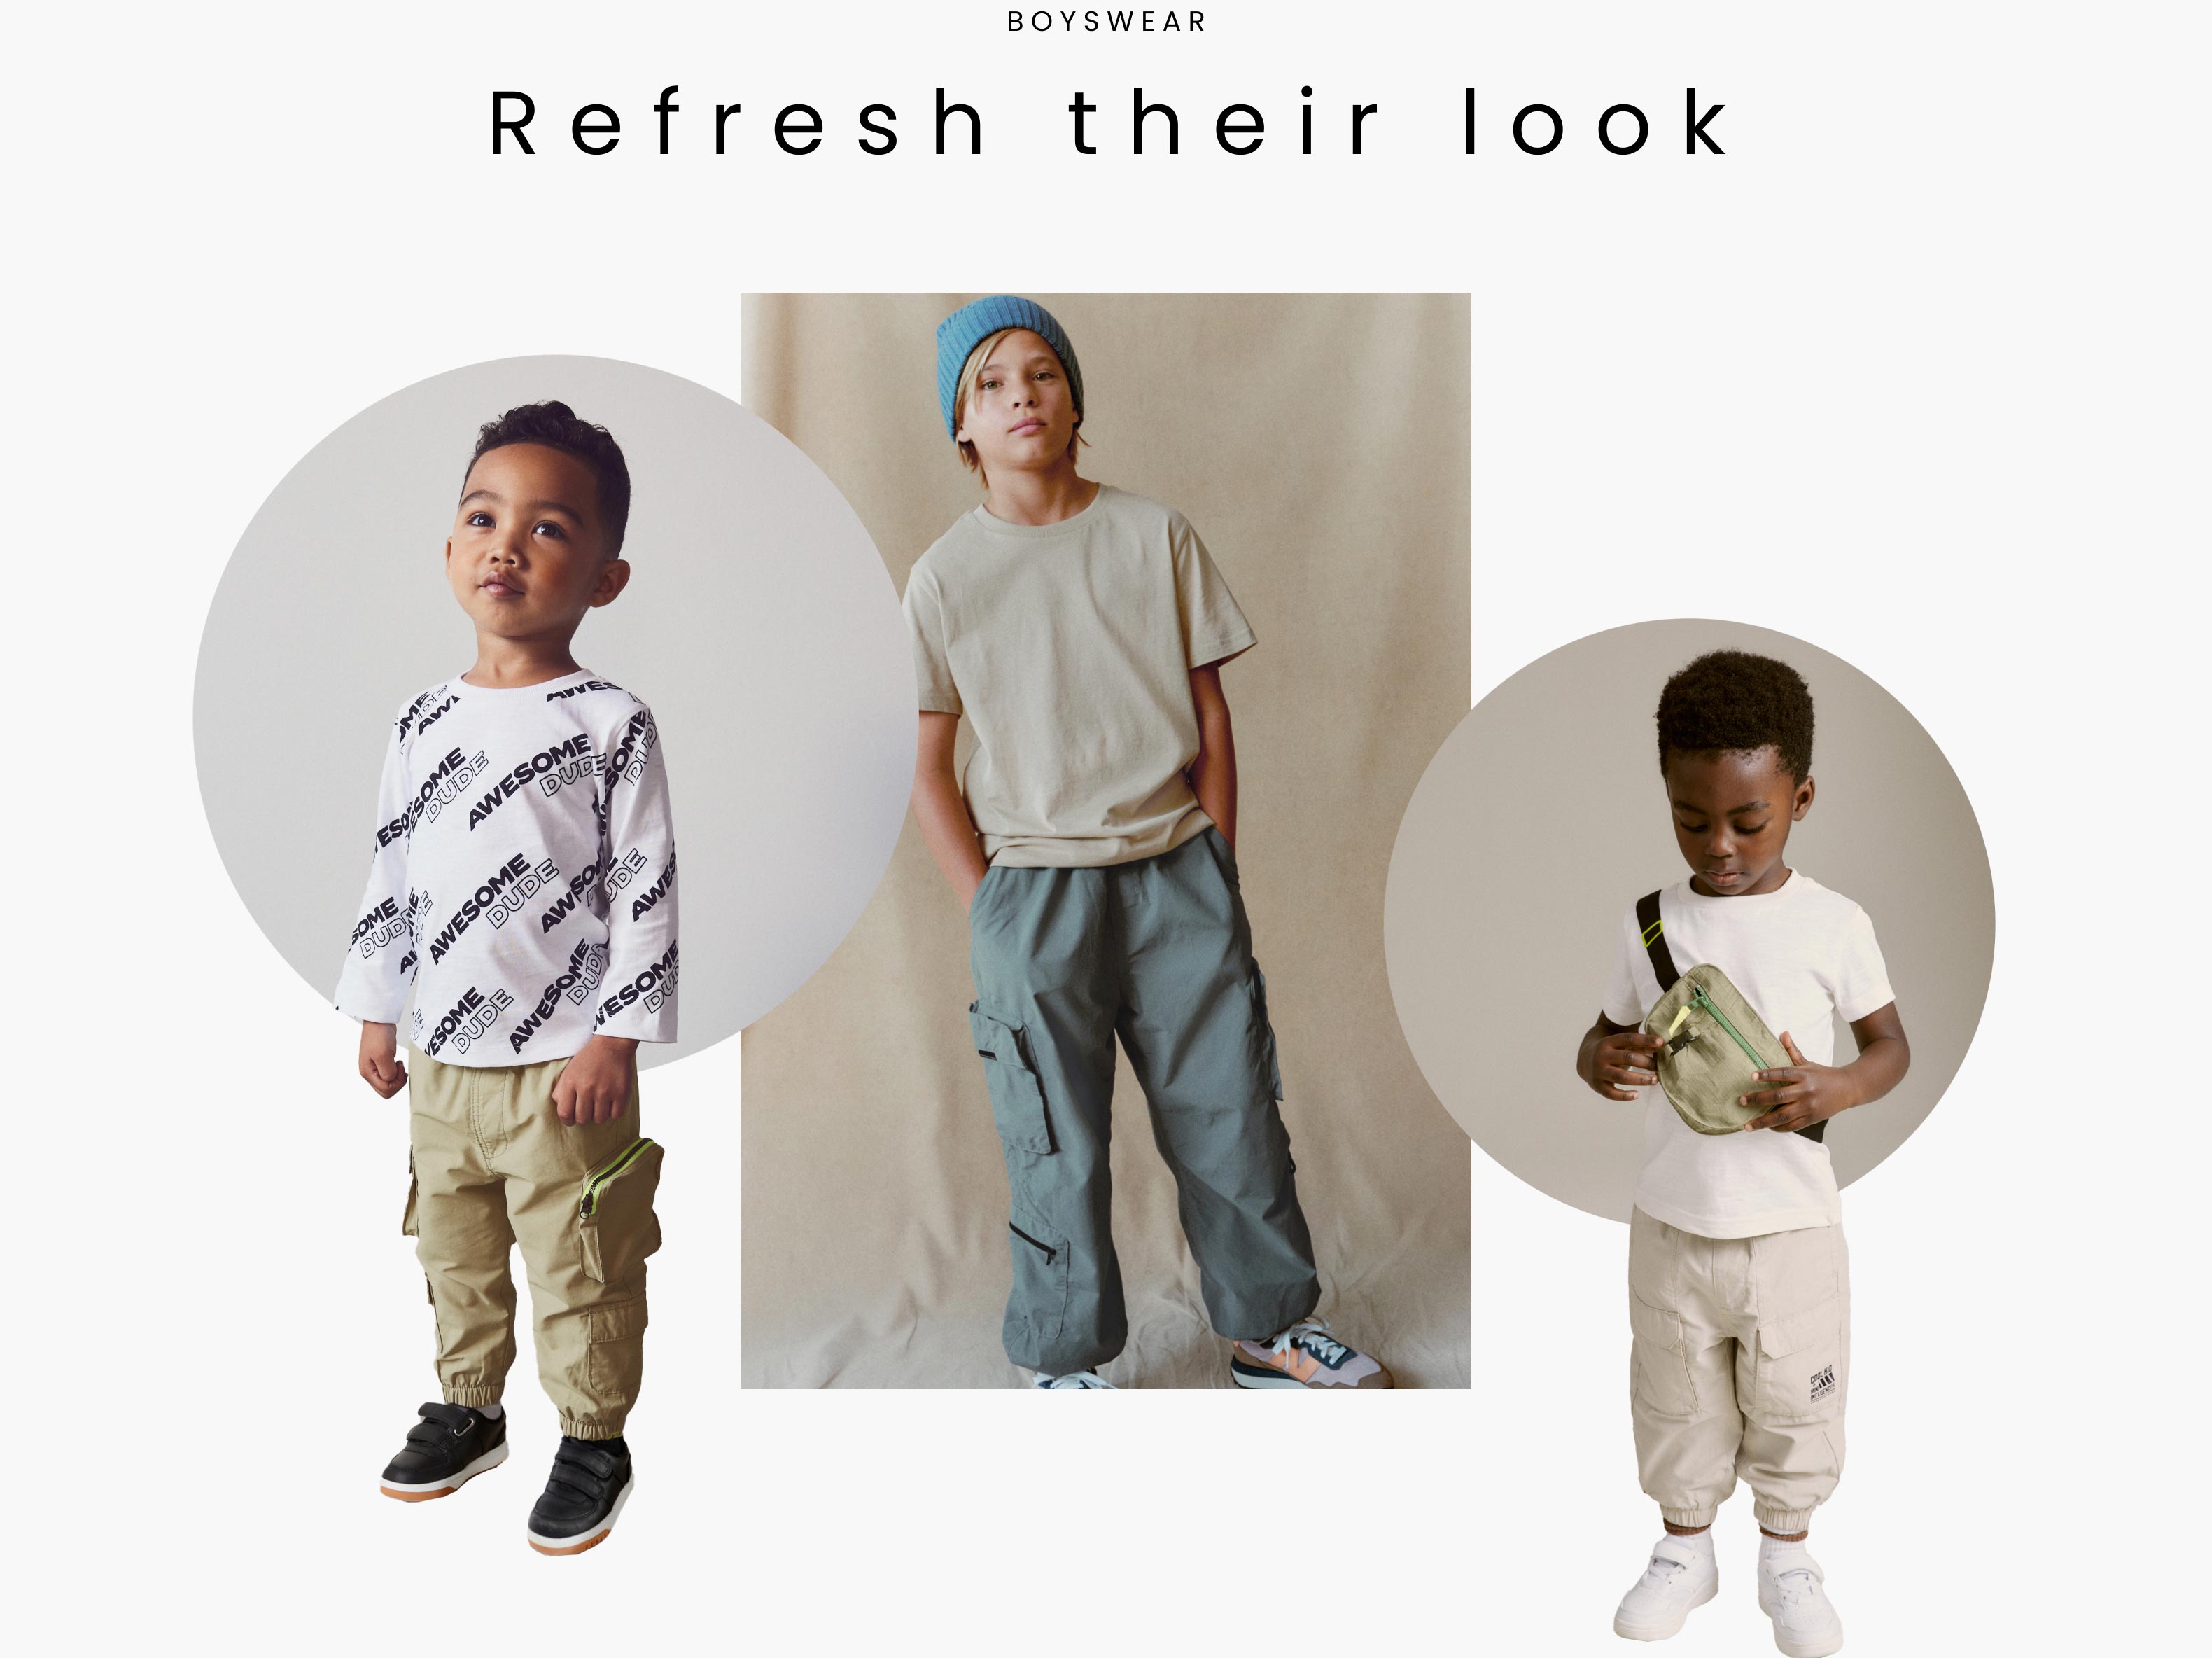 Boyswear - Refresh their look